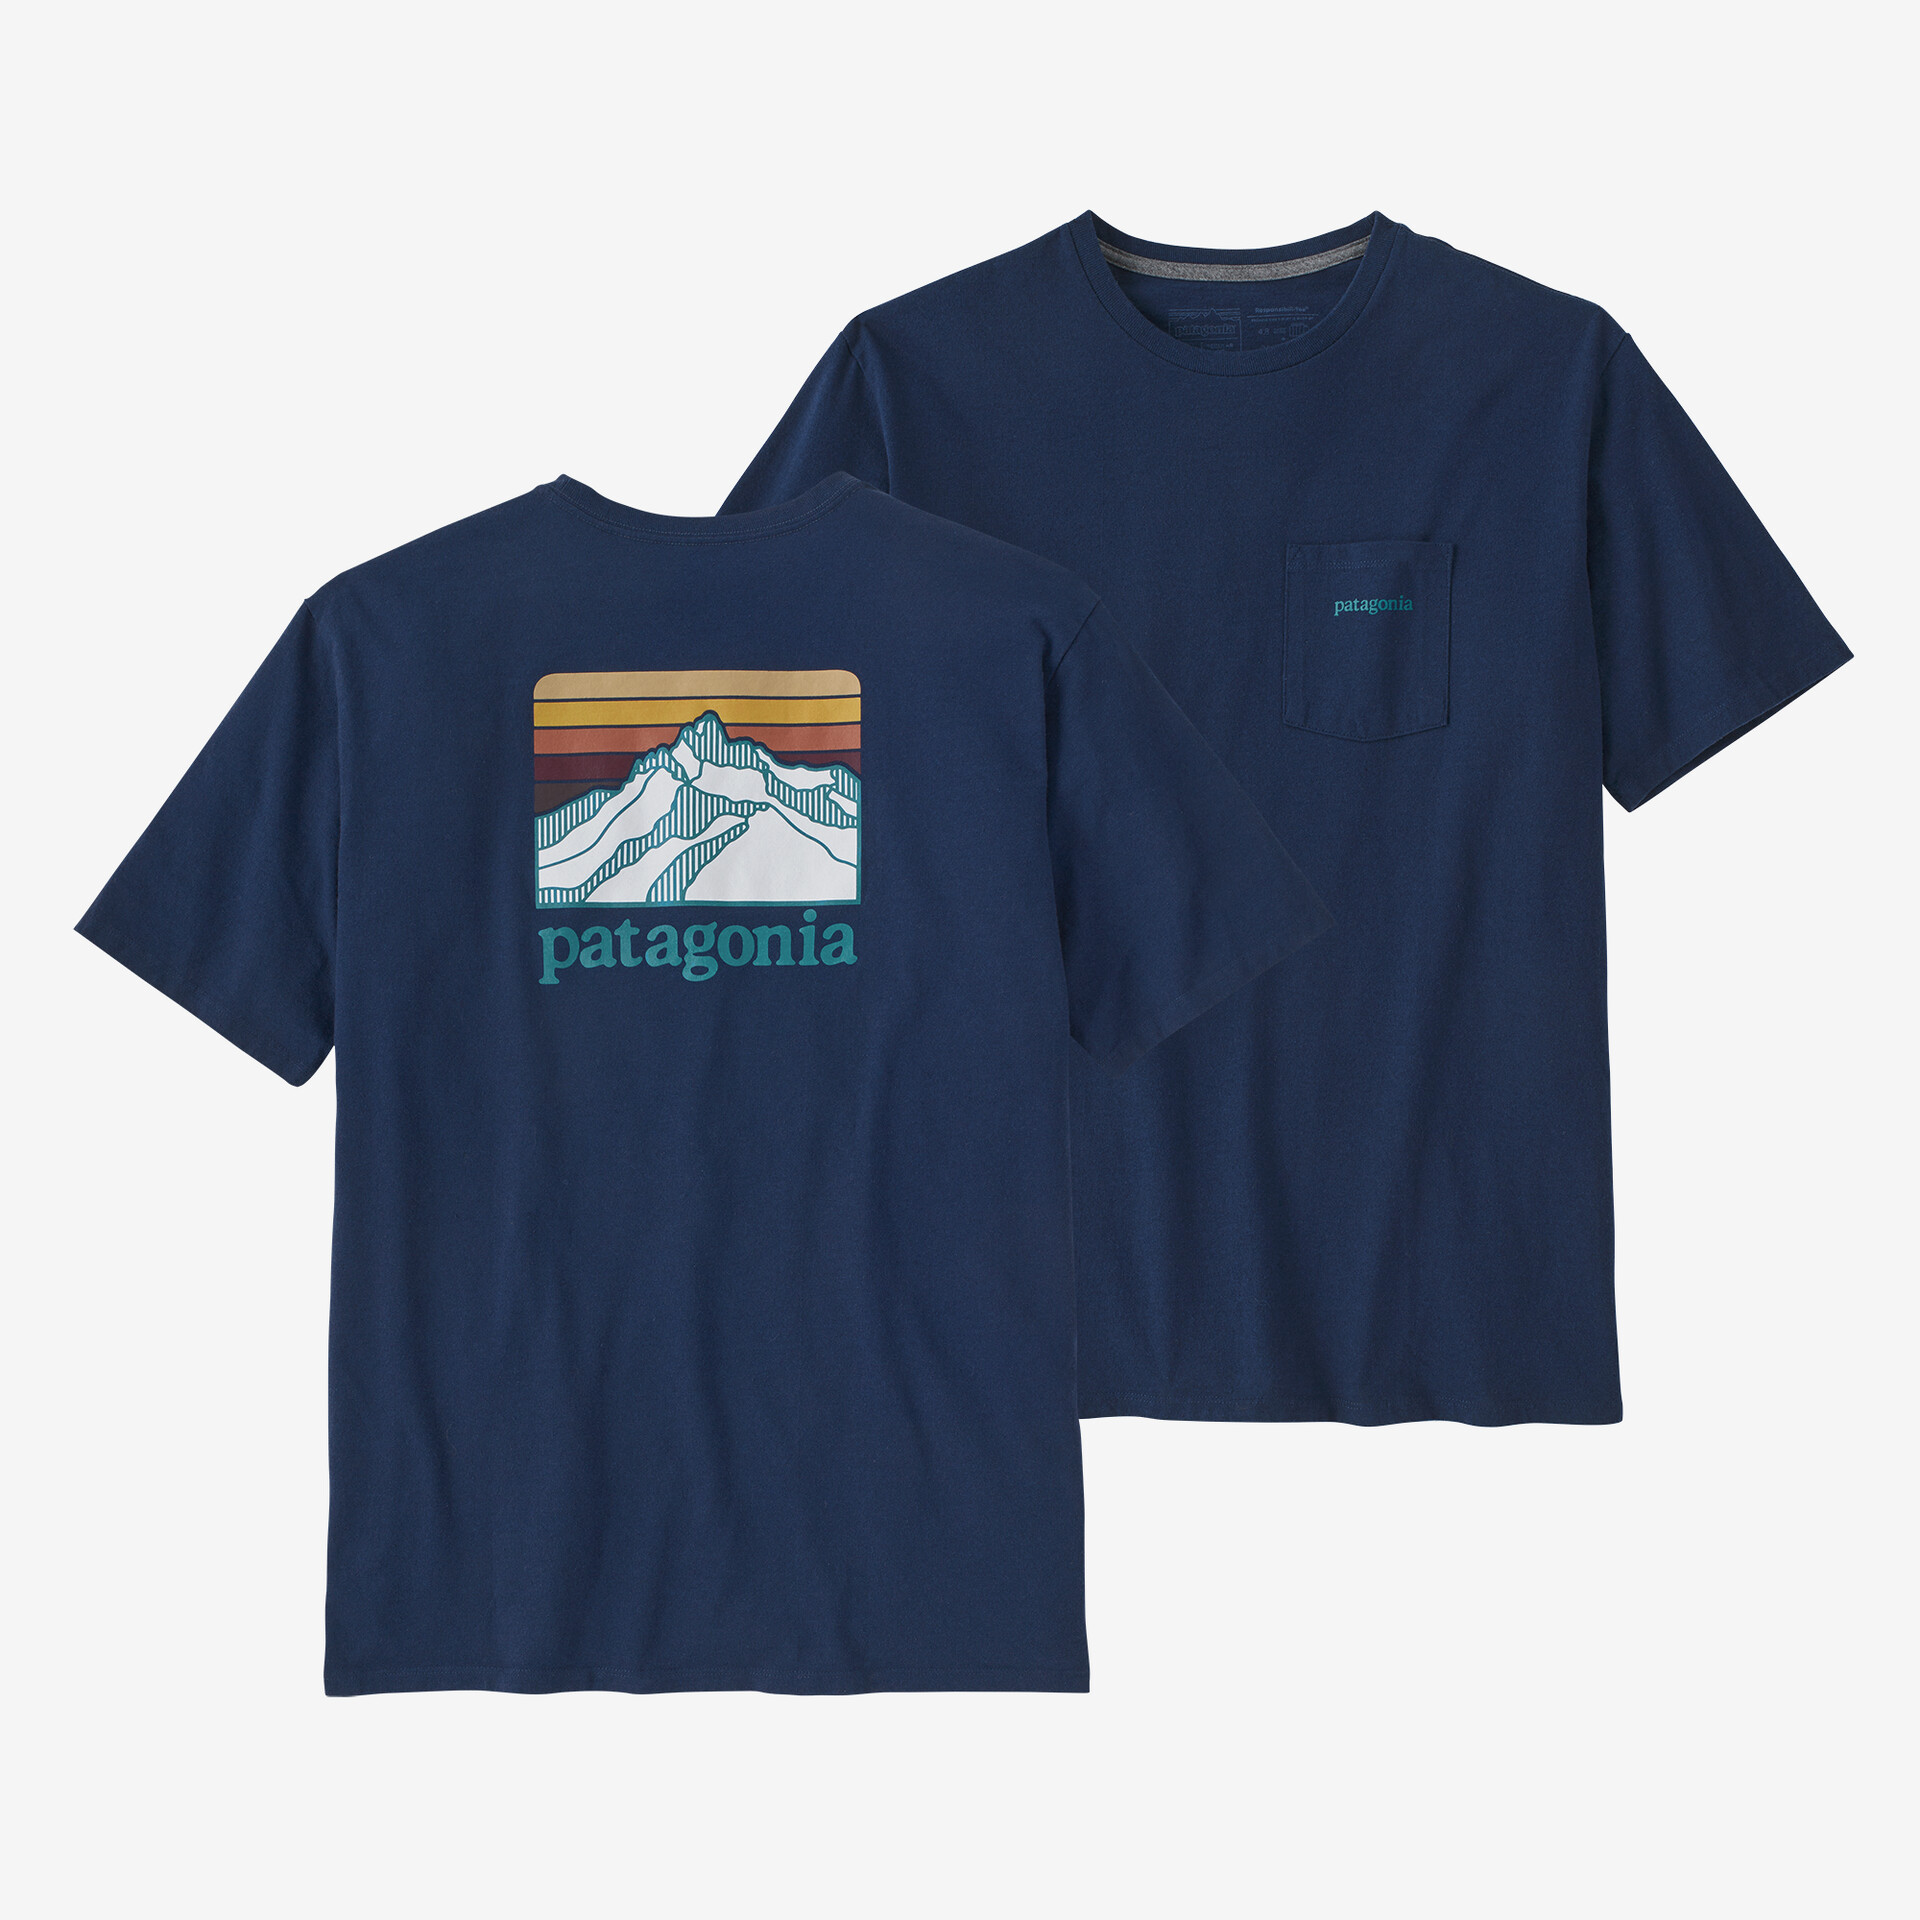 Мужская ответственная футболка с логотипом и карманом Patagonia, лагом синий мужская ответственная футболка с логотипом и карманом patagonia черный